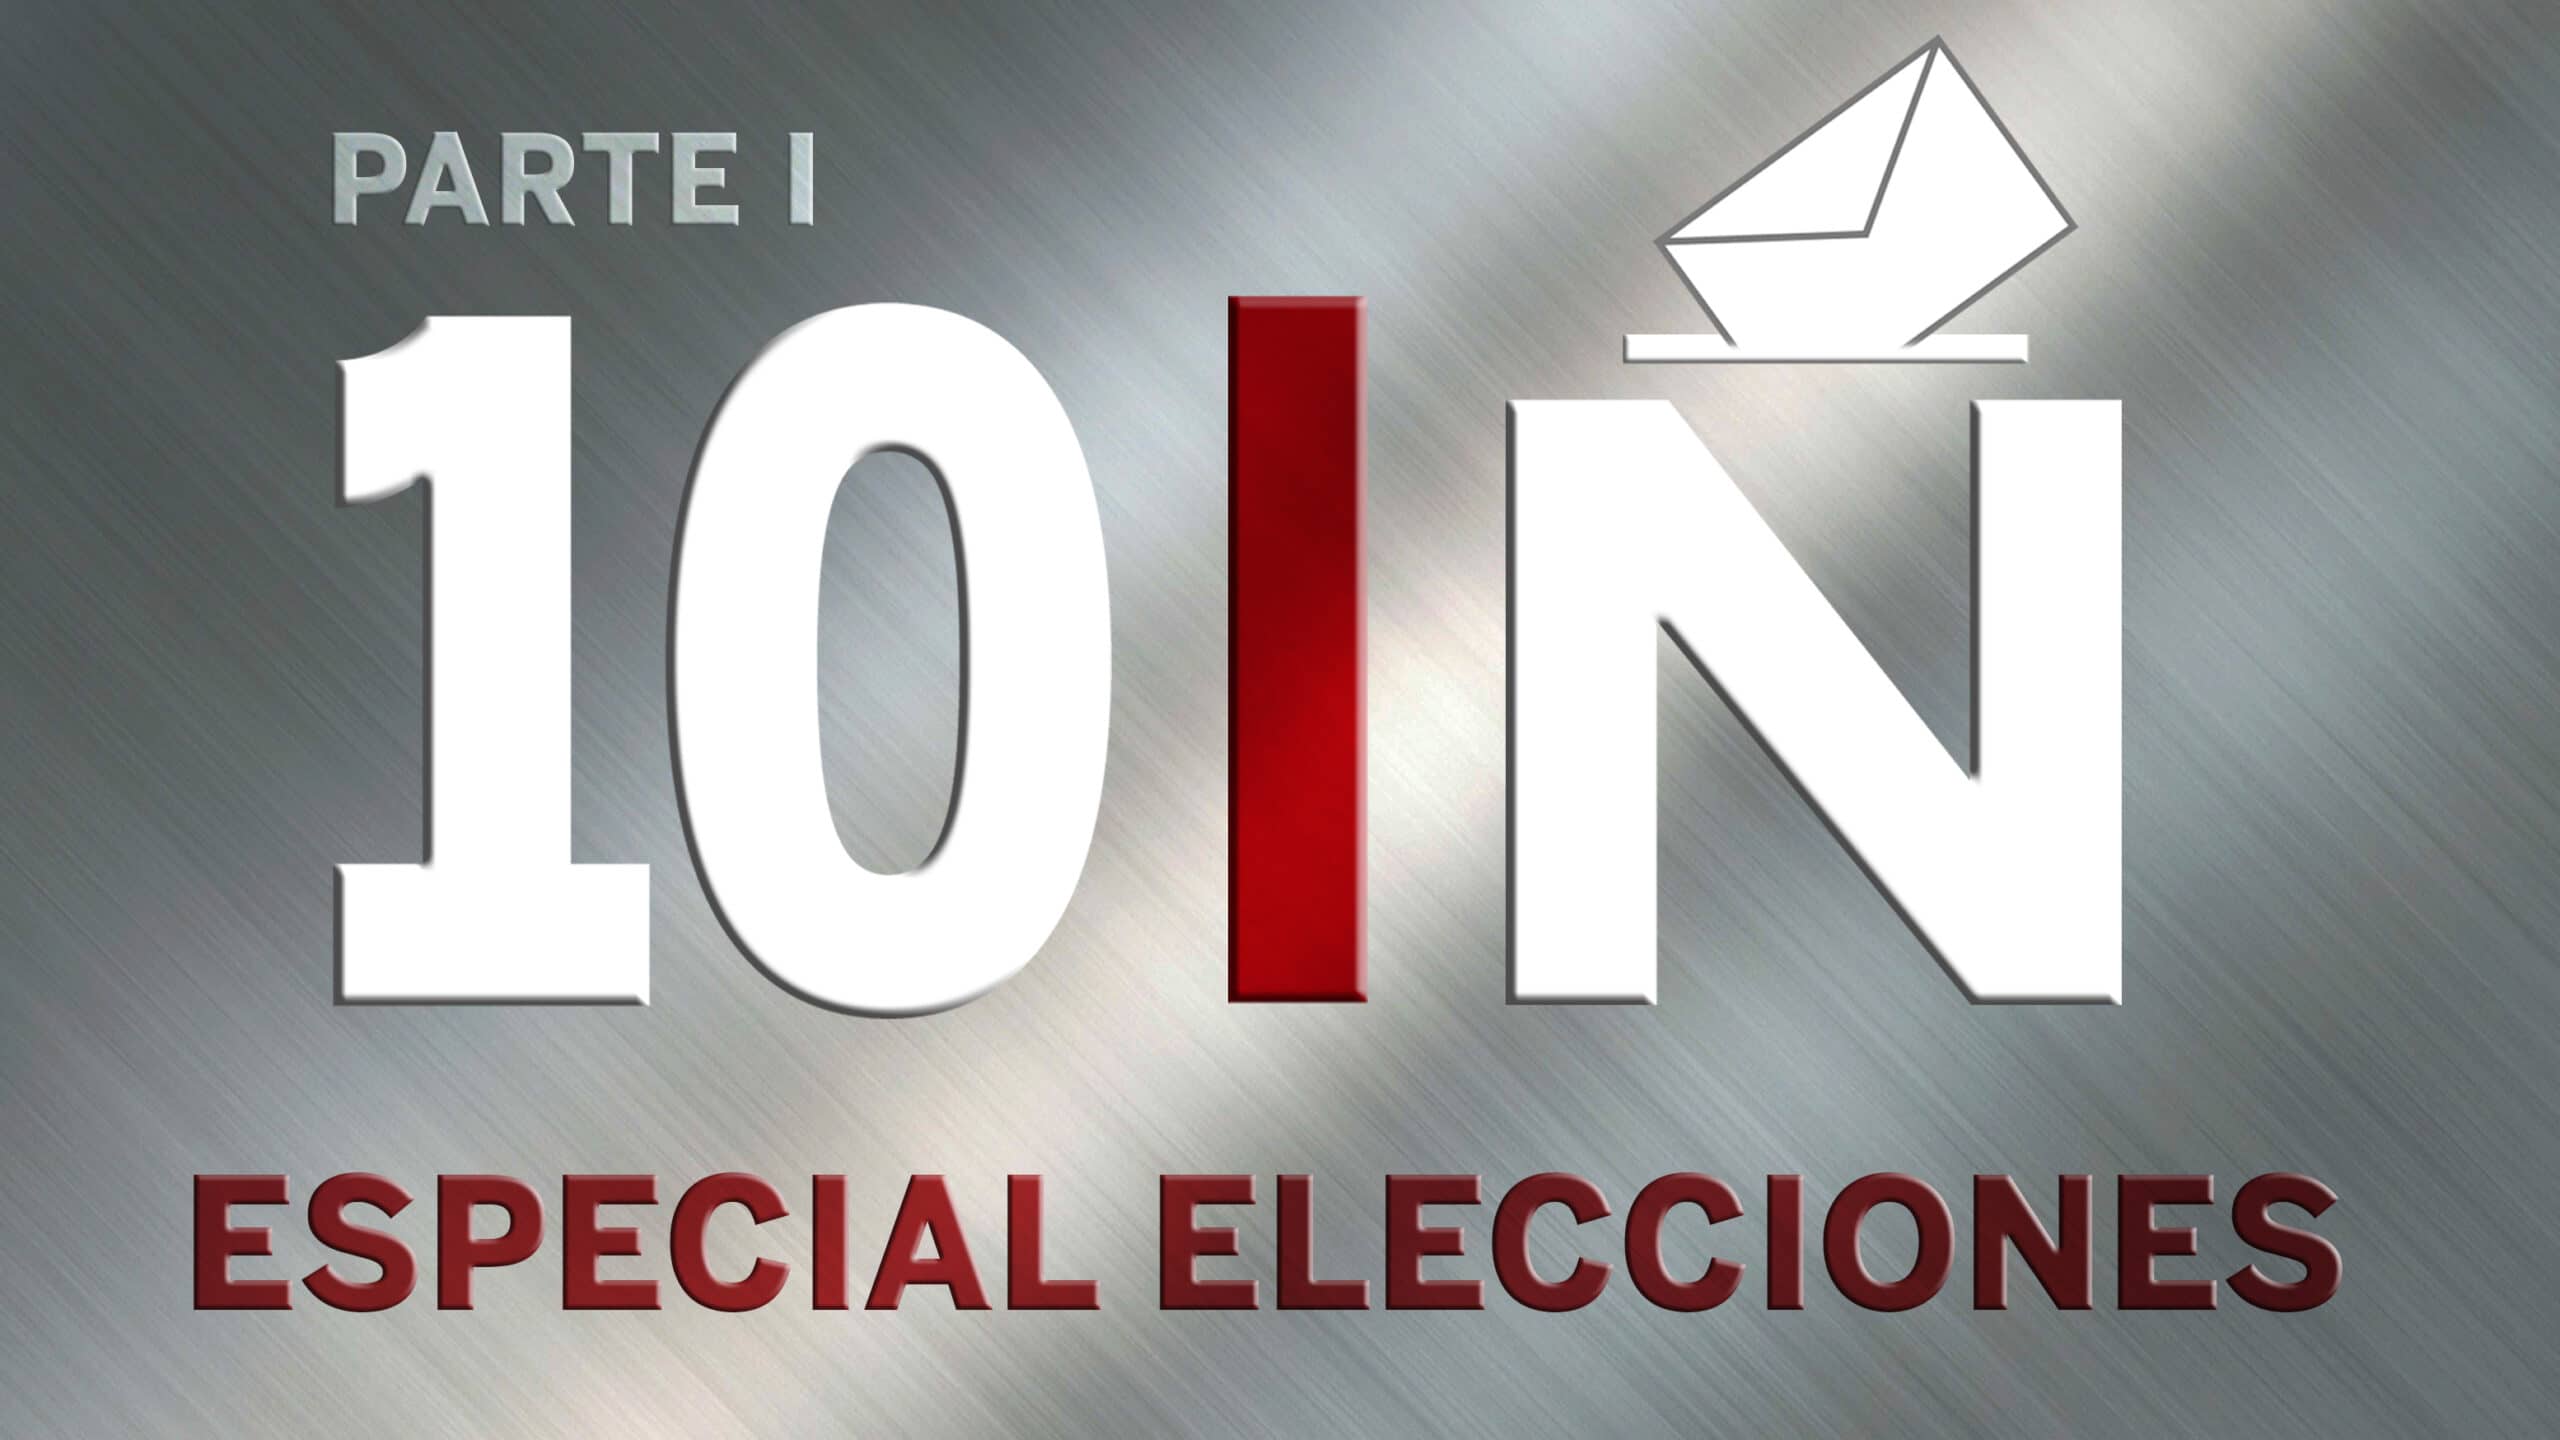 Especial Elecciones 10-N – Parte I (10/11/19) – Programa Completo